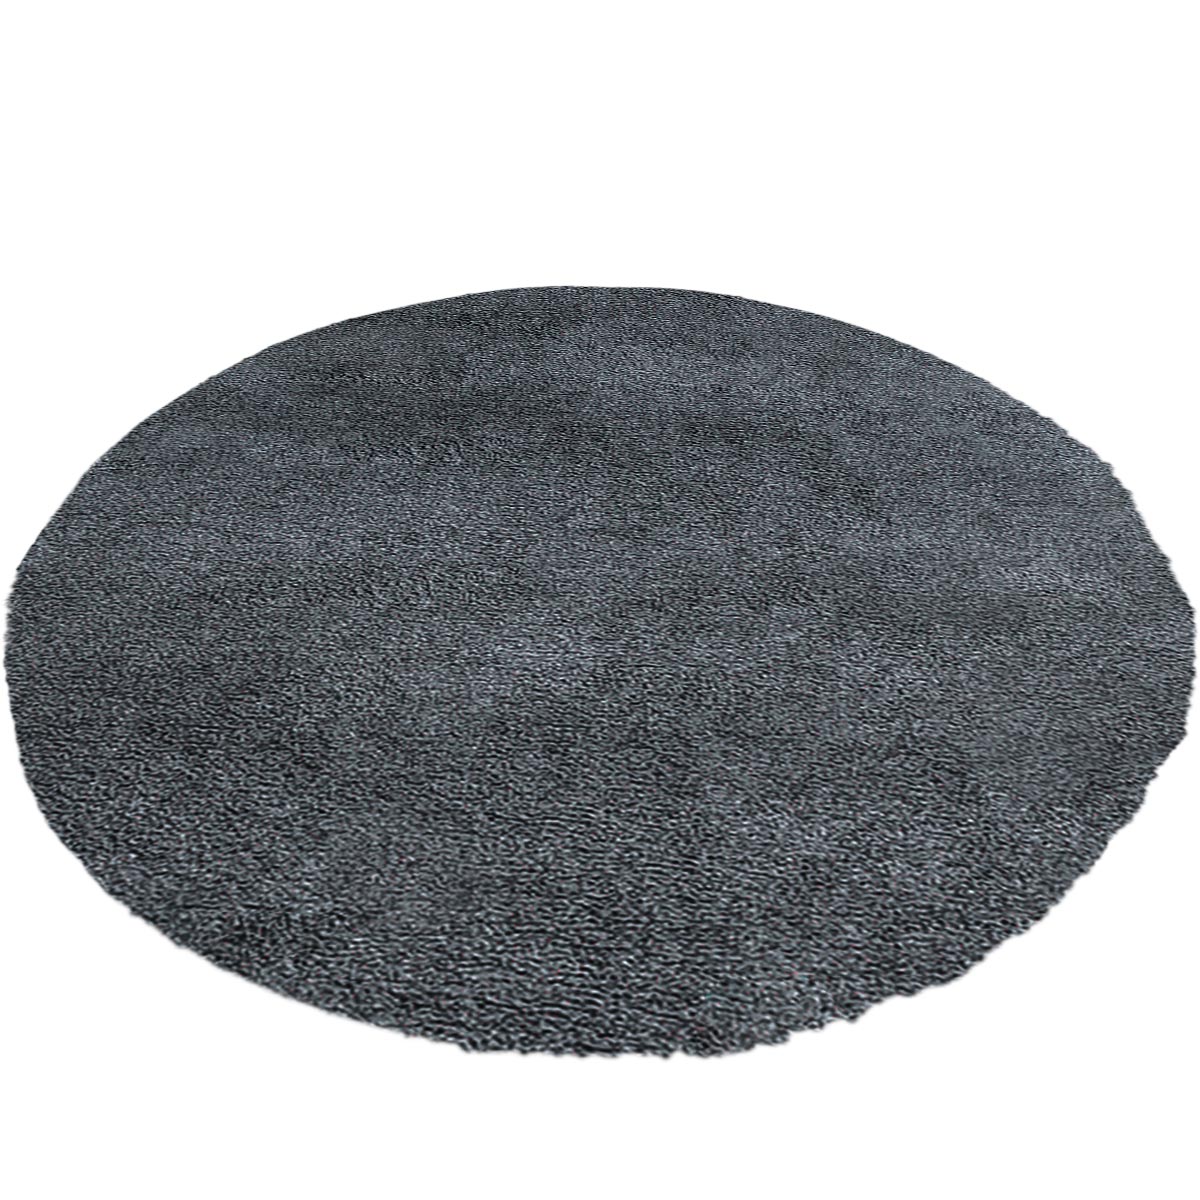 שטיח מונקו 10 אפור/שחור עגול | השטיח האדום